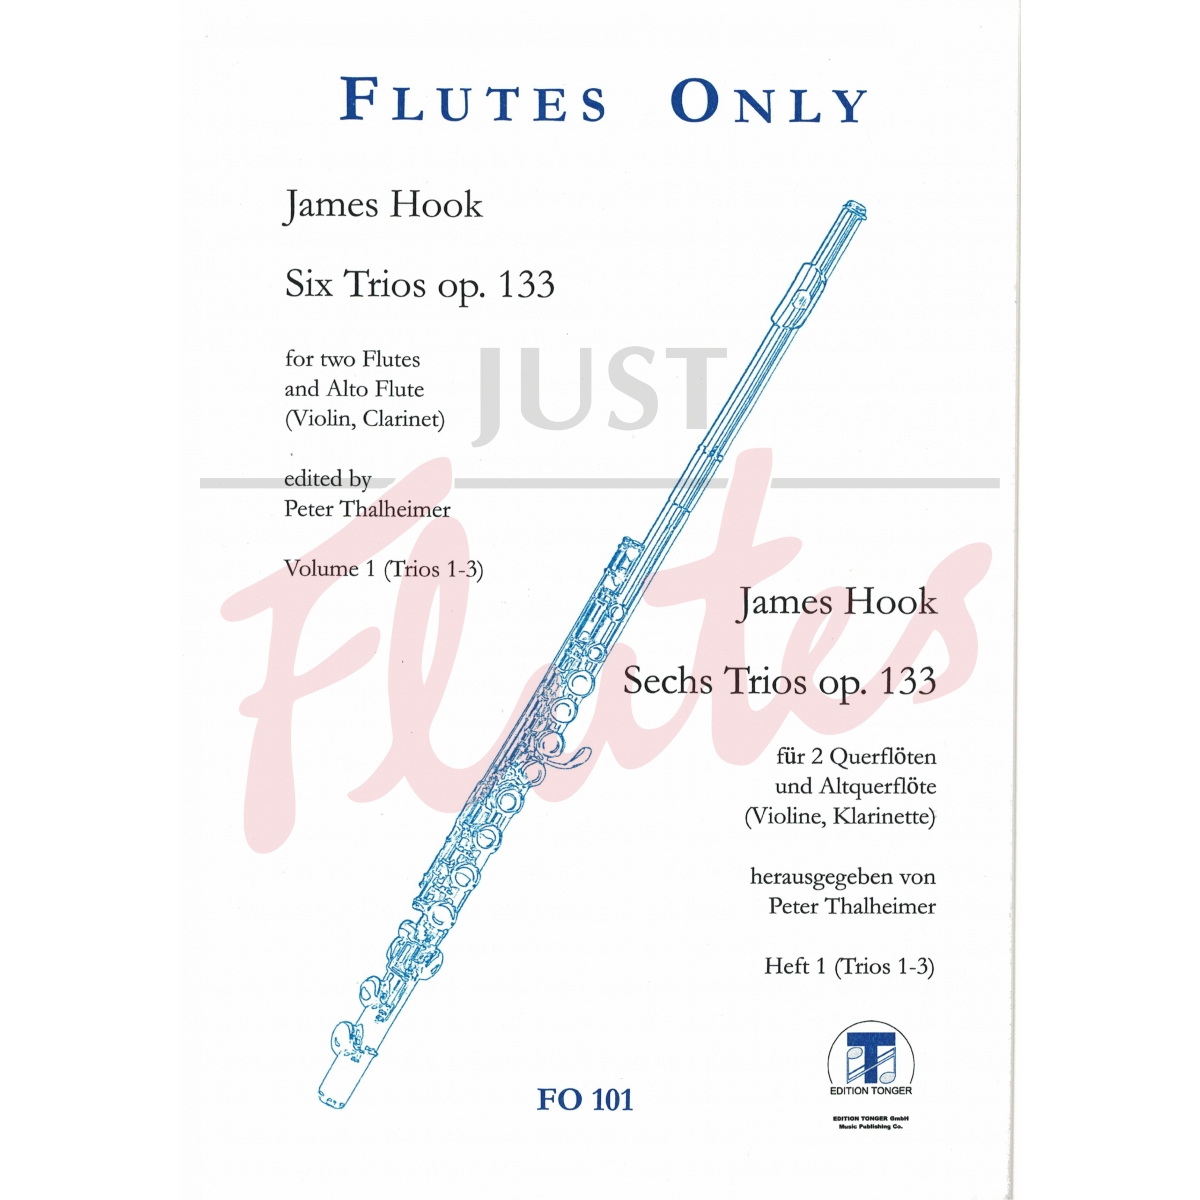 6 Flute Trios